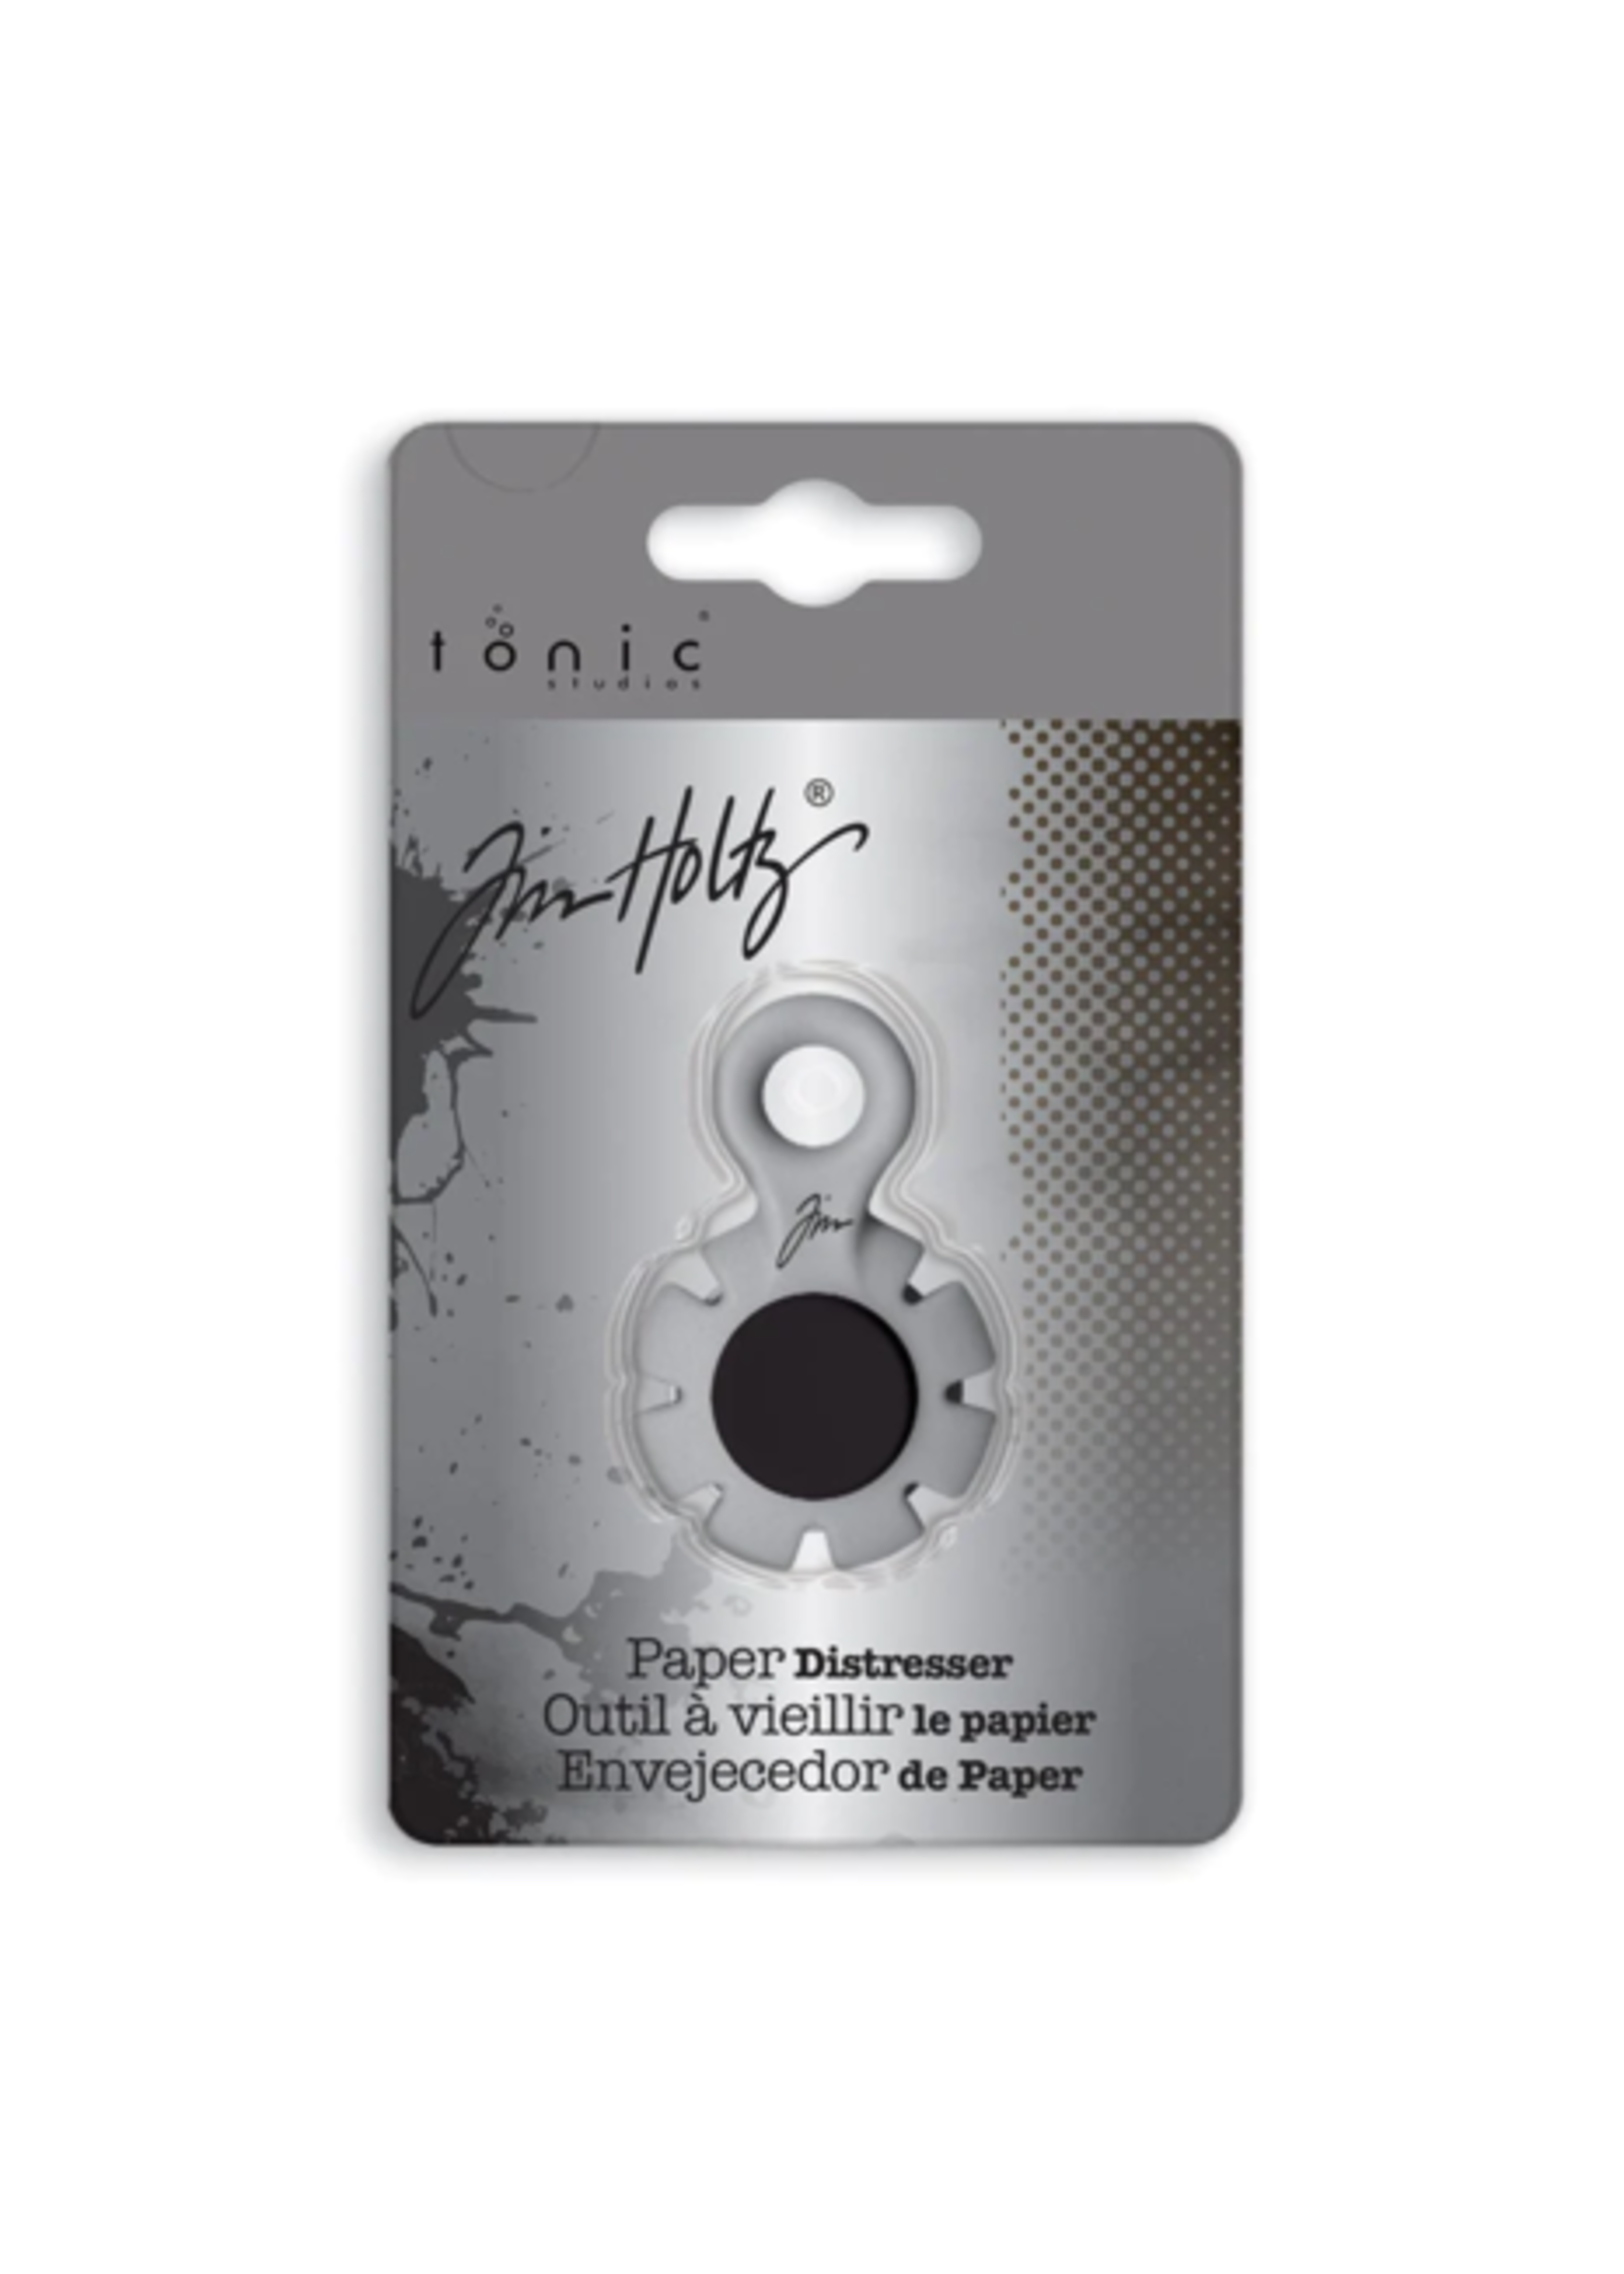 Tim Holtz Tim Holtz Thread Cutter/Paper Distresser (259e)